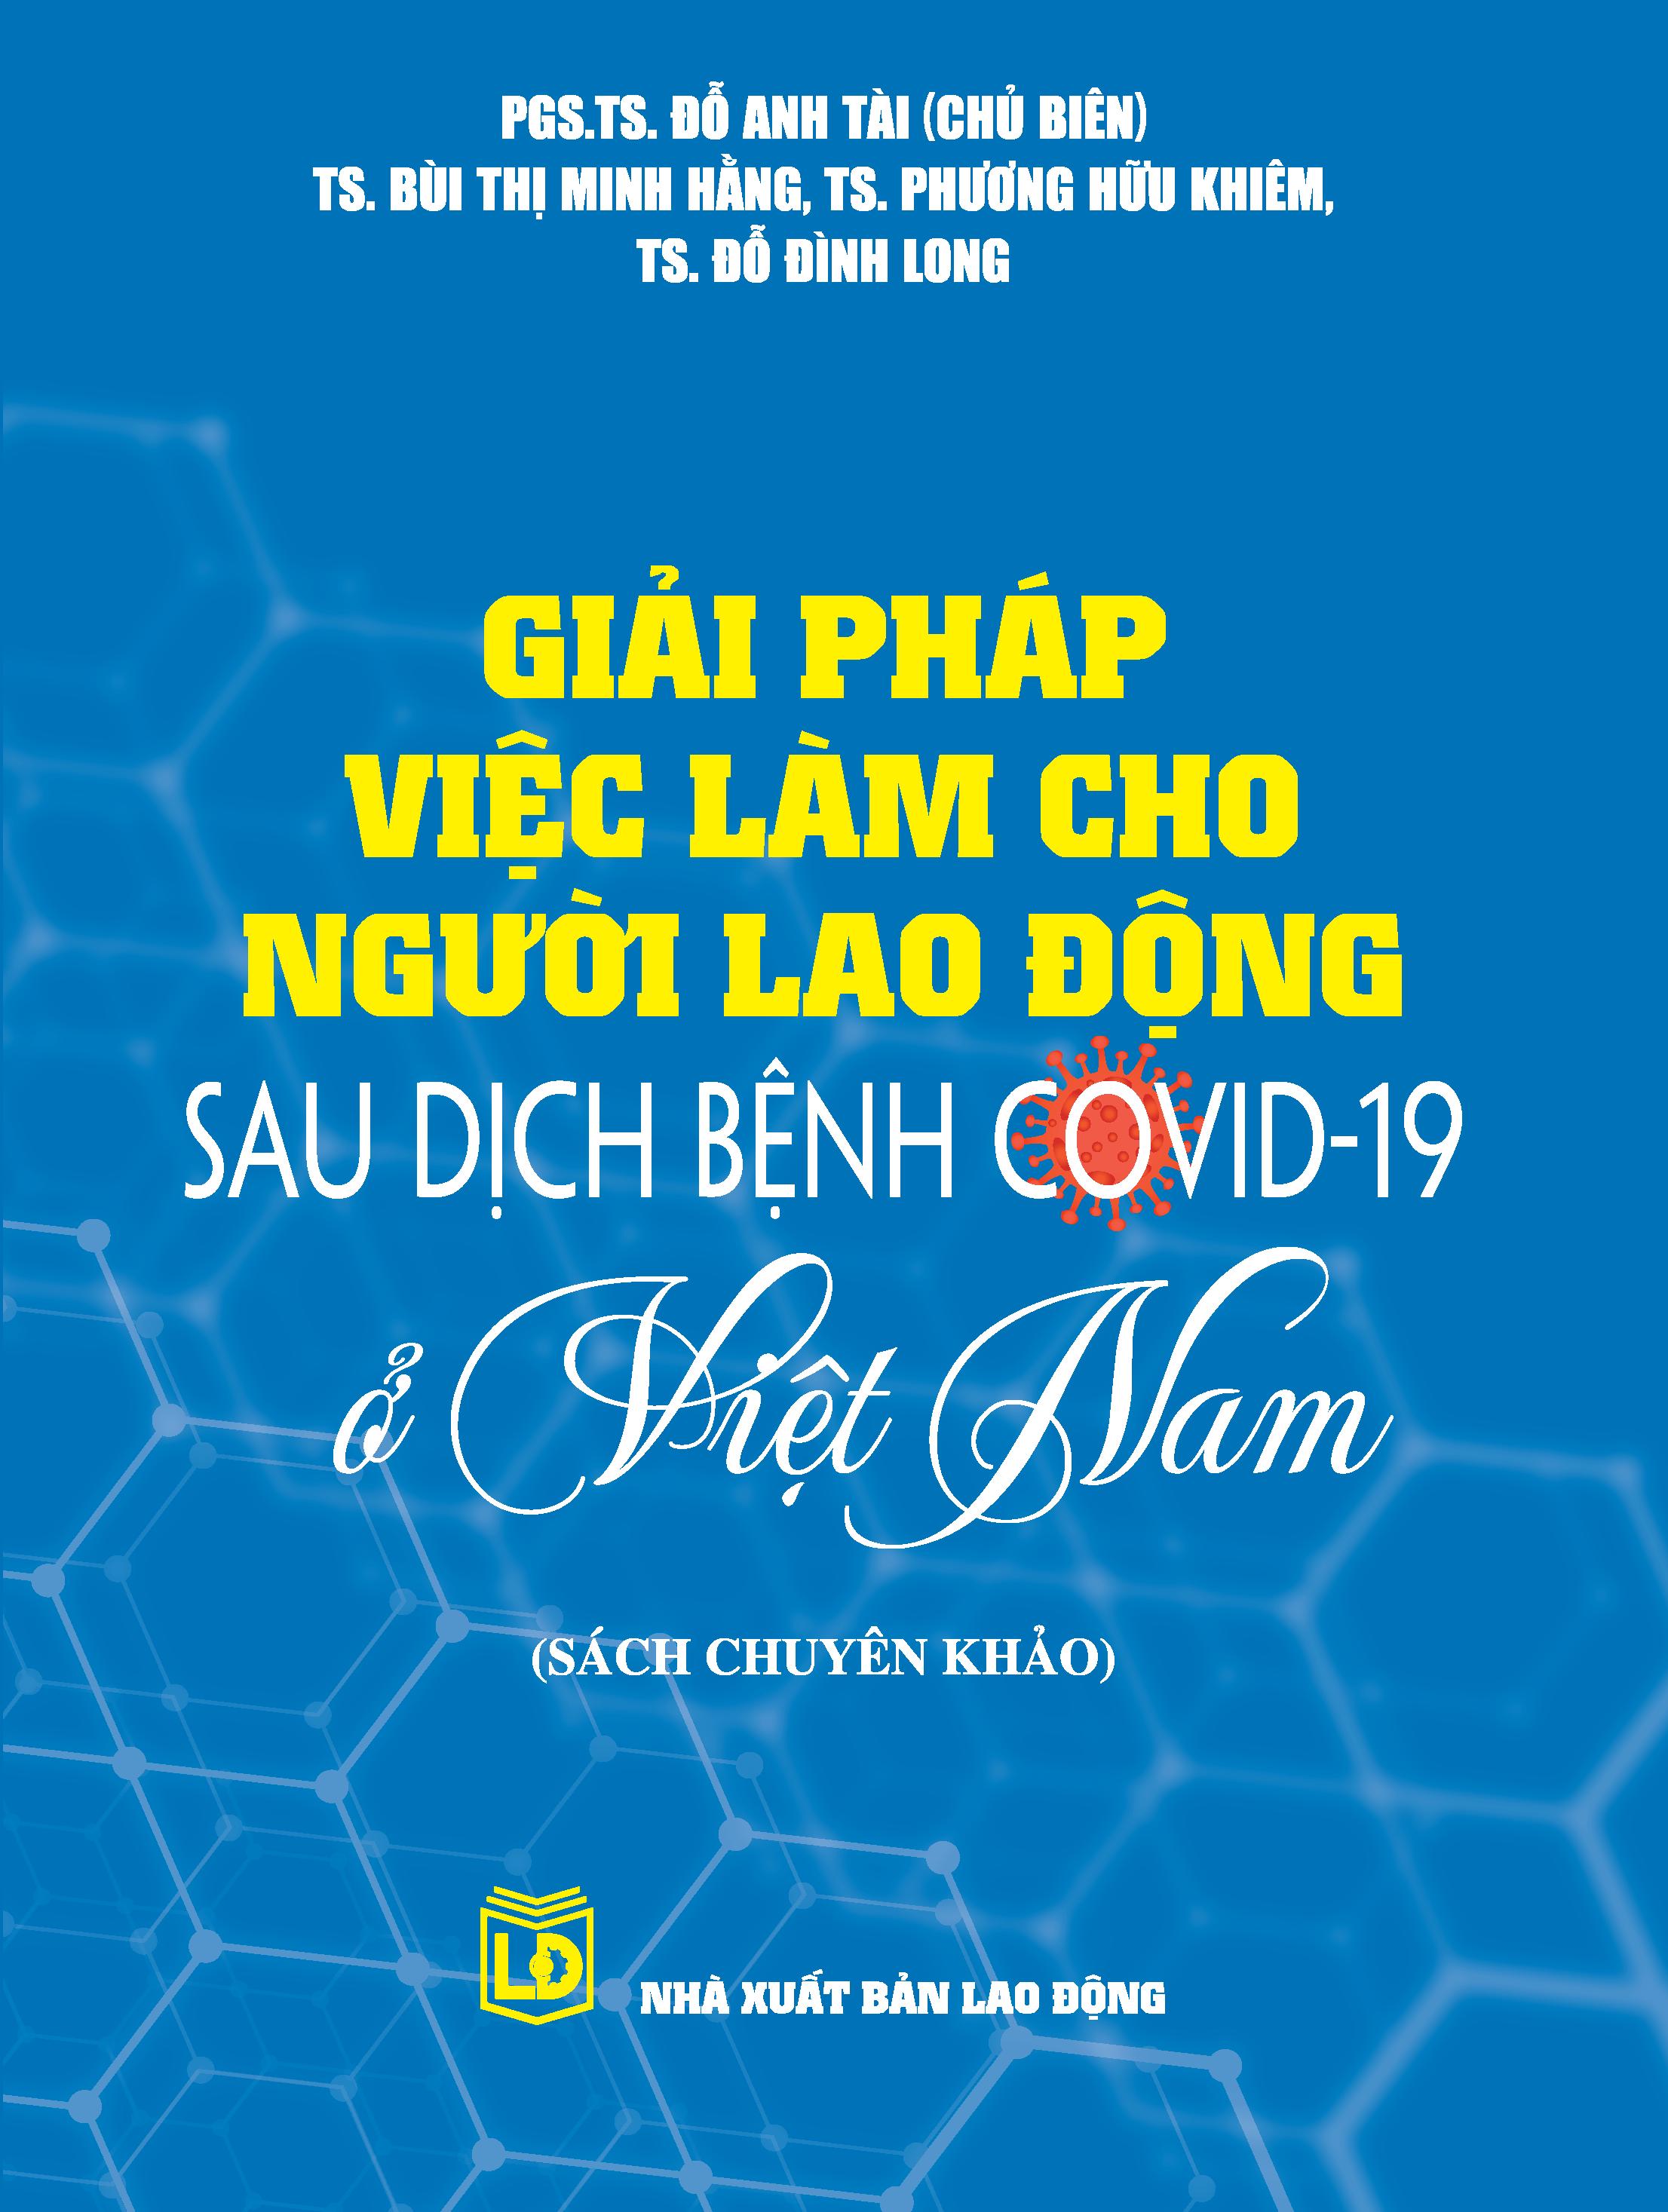 Giải pháp việc làm cho người lao động sau dịch bệnh Covid-19 ở Việt Nam (Sách chuyên khảo)